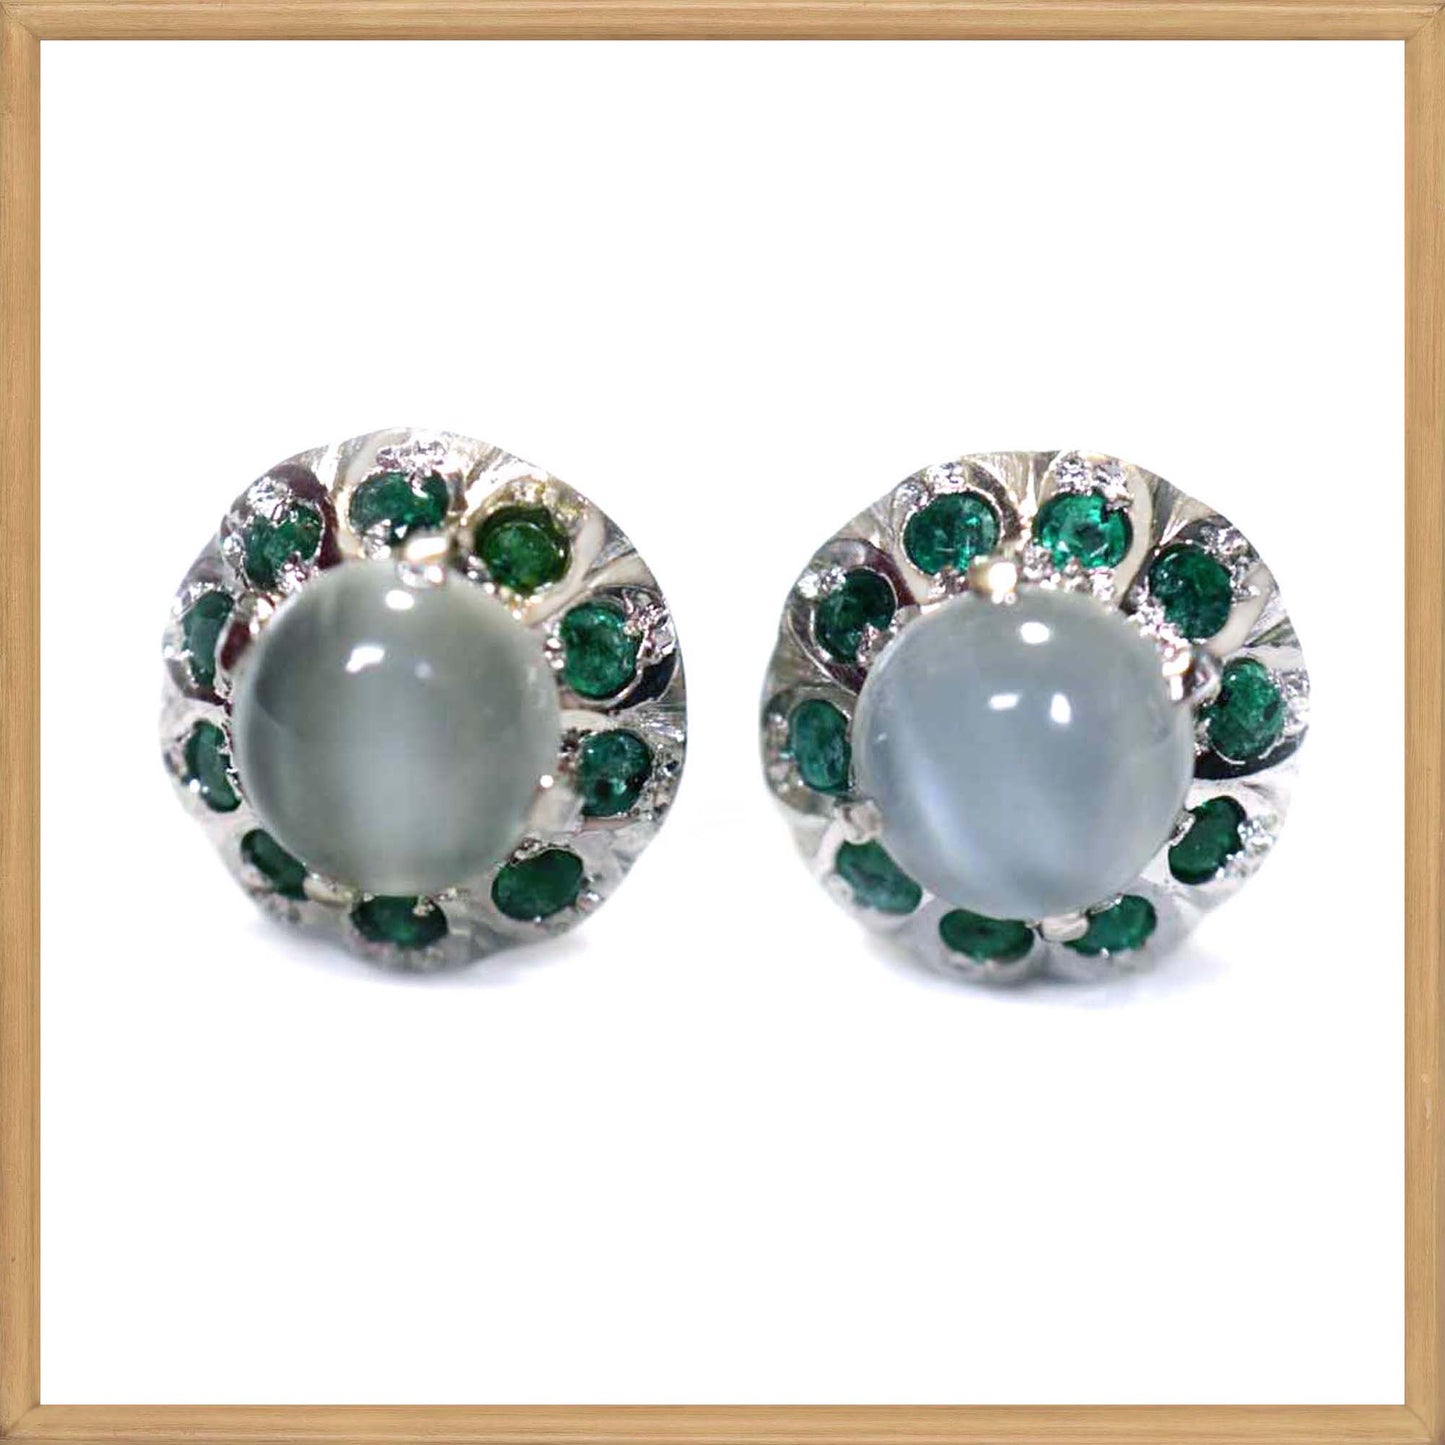 Moonstone and Tsavorite Garnet Stud Earrings in Sterling Silver 